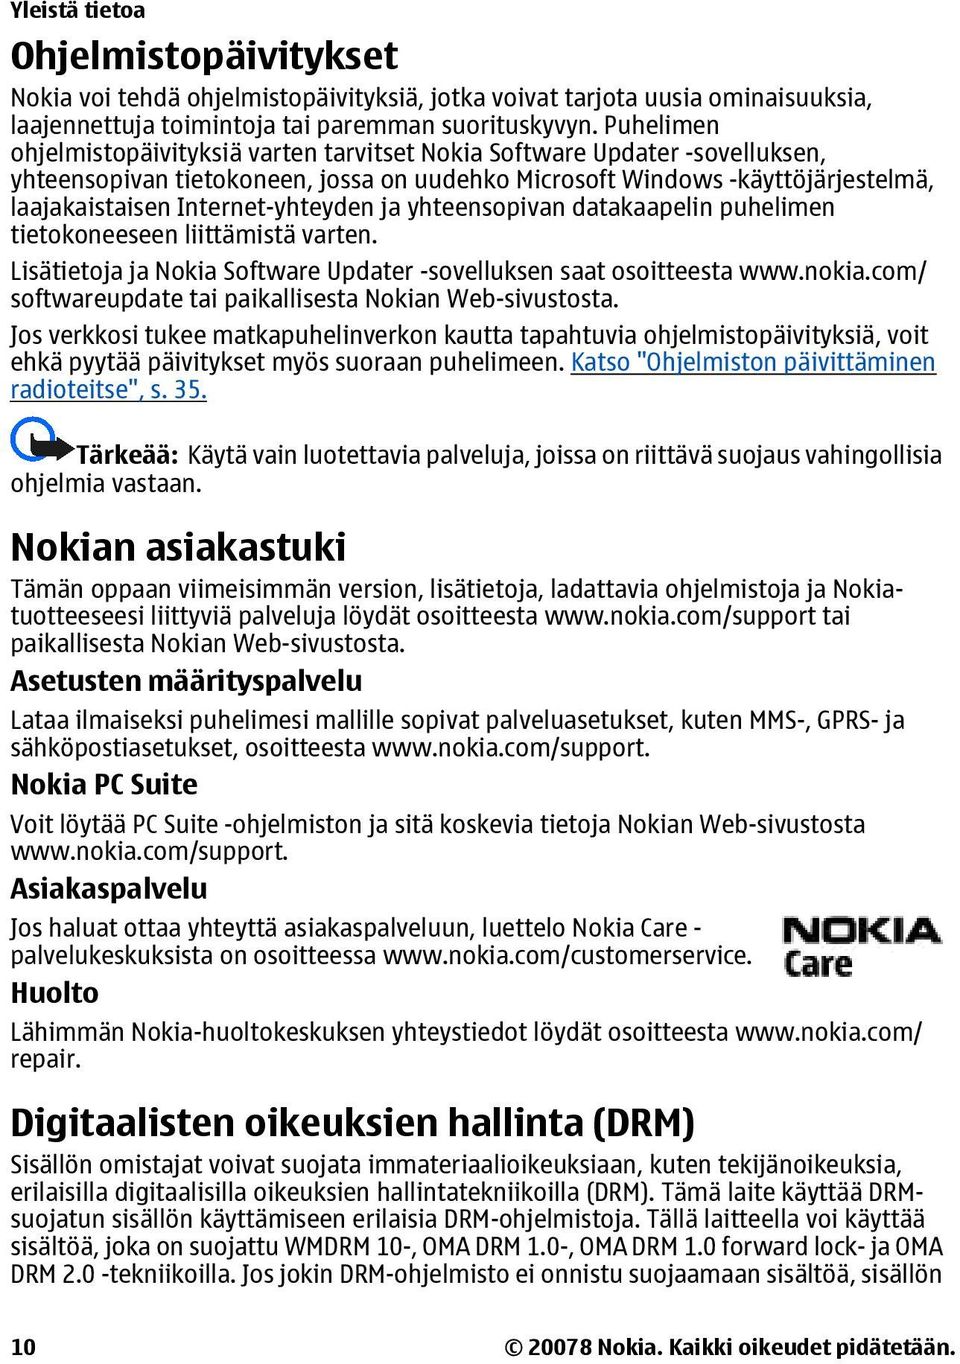 Internet-yhteyden ja yhteensopivan datakaapelin puhelimen tietokoneeseen liittämistä varten. Lisätietoja ja Nokia Software Updater -sovelluksen saat osoitteesta www.nokia.